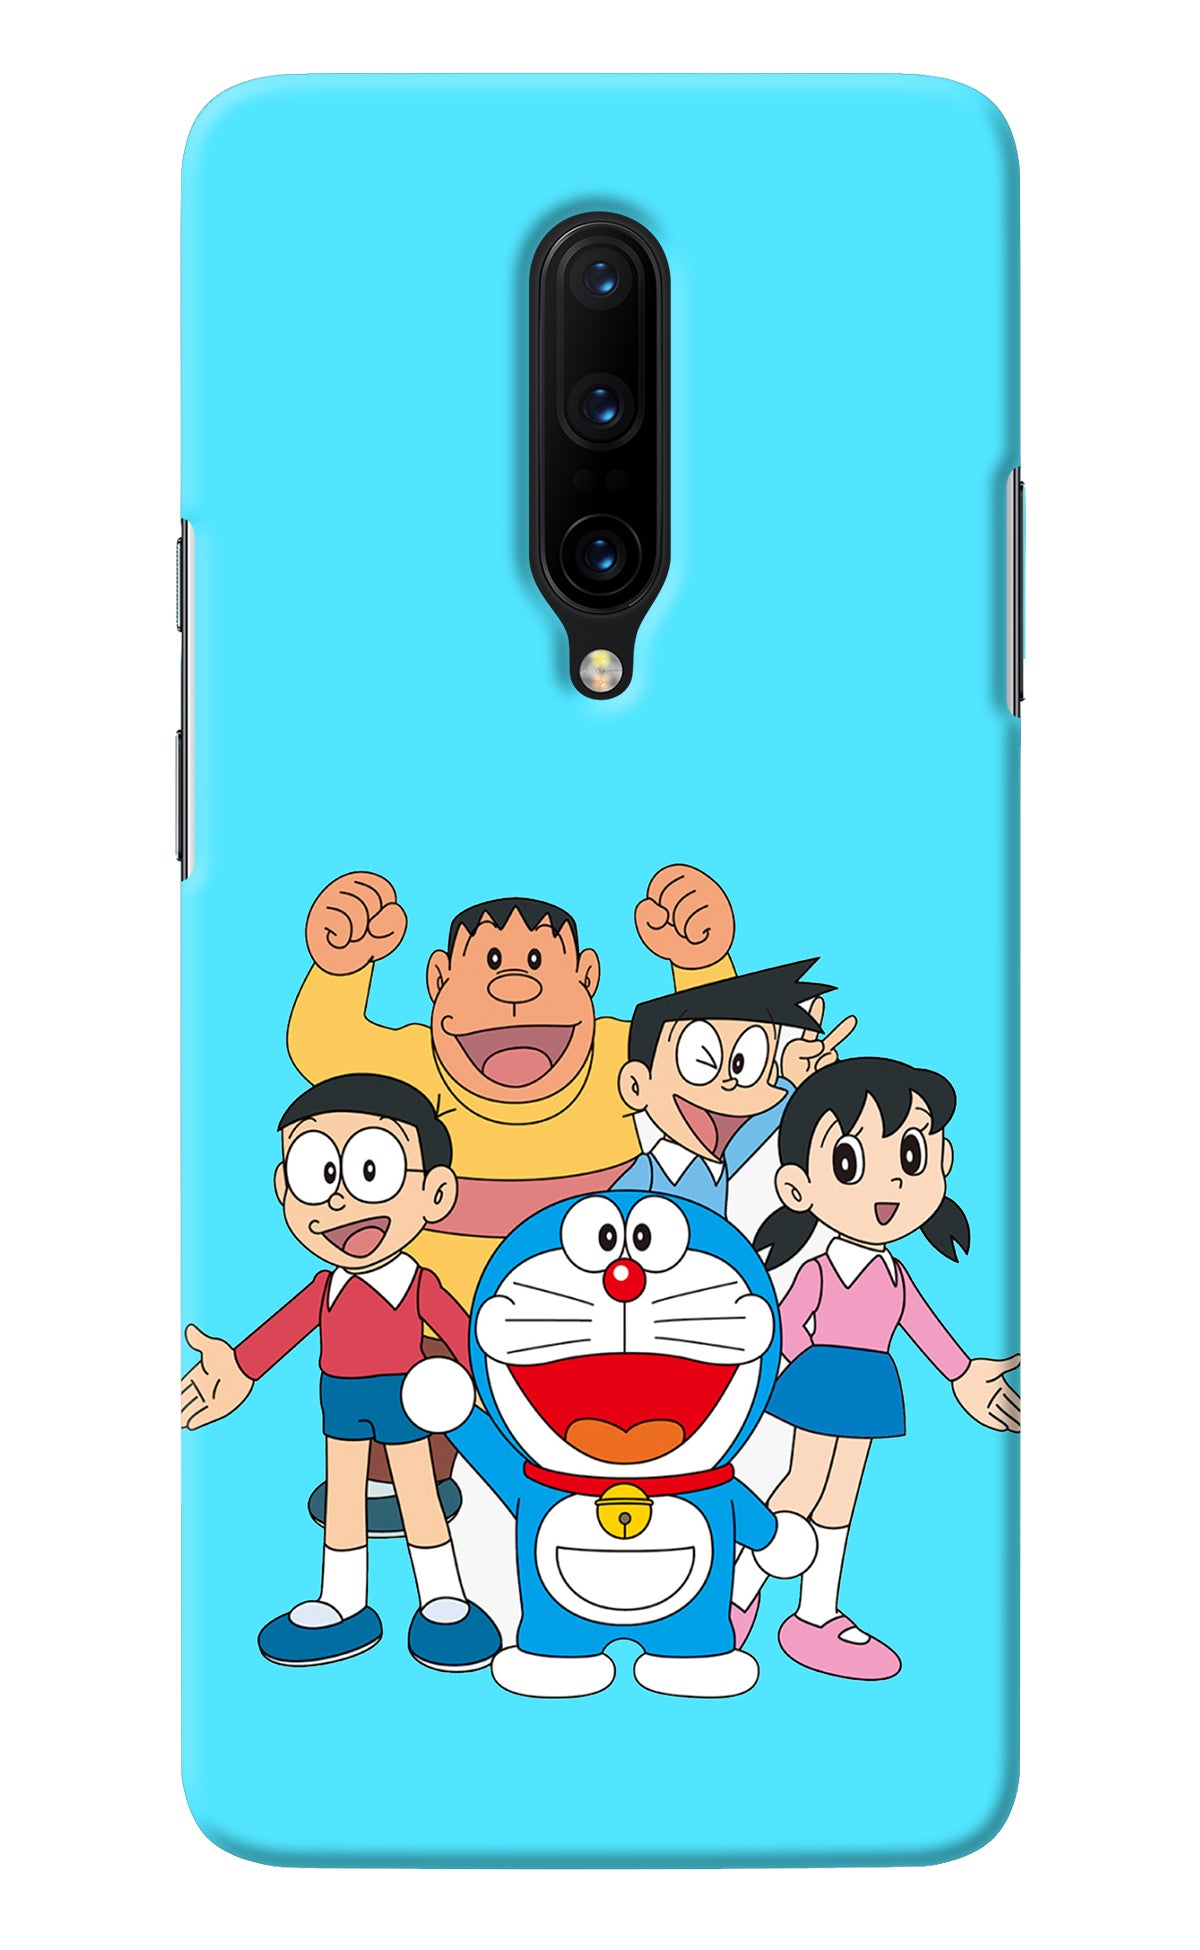 Doraemon Gang Oneplus 7 Pro Back Cover